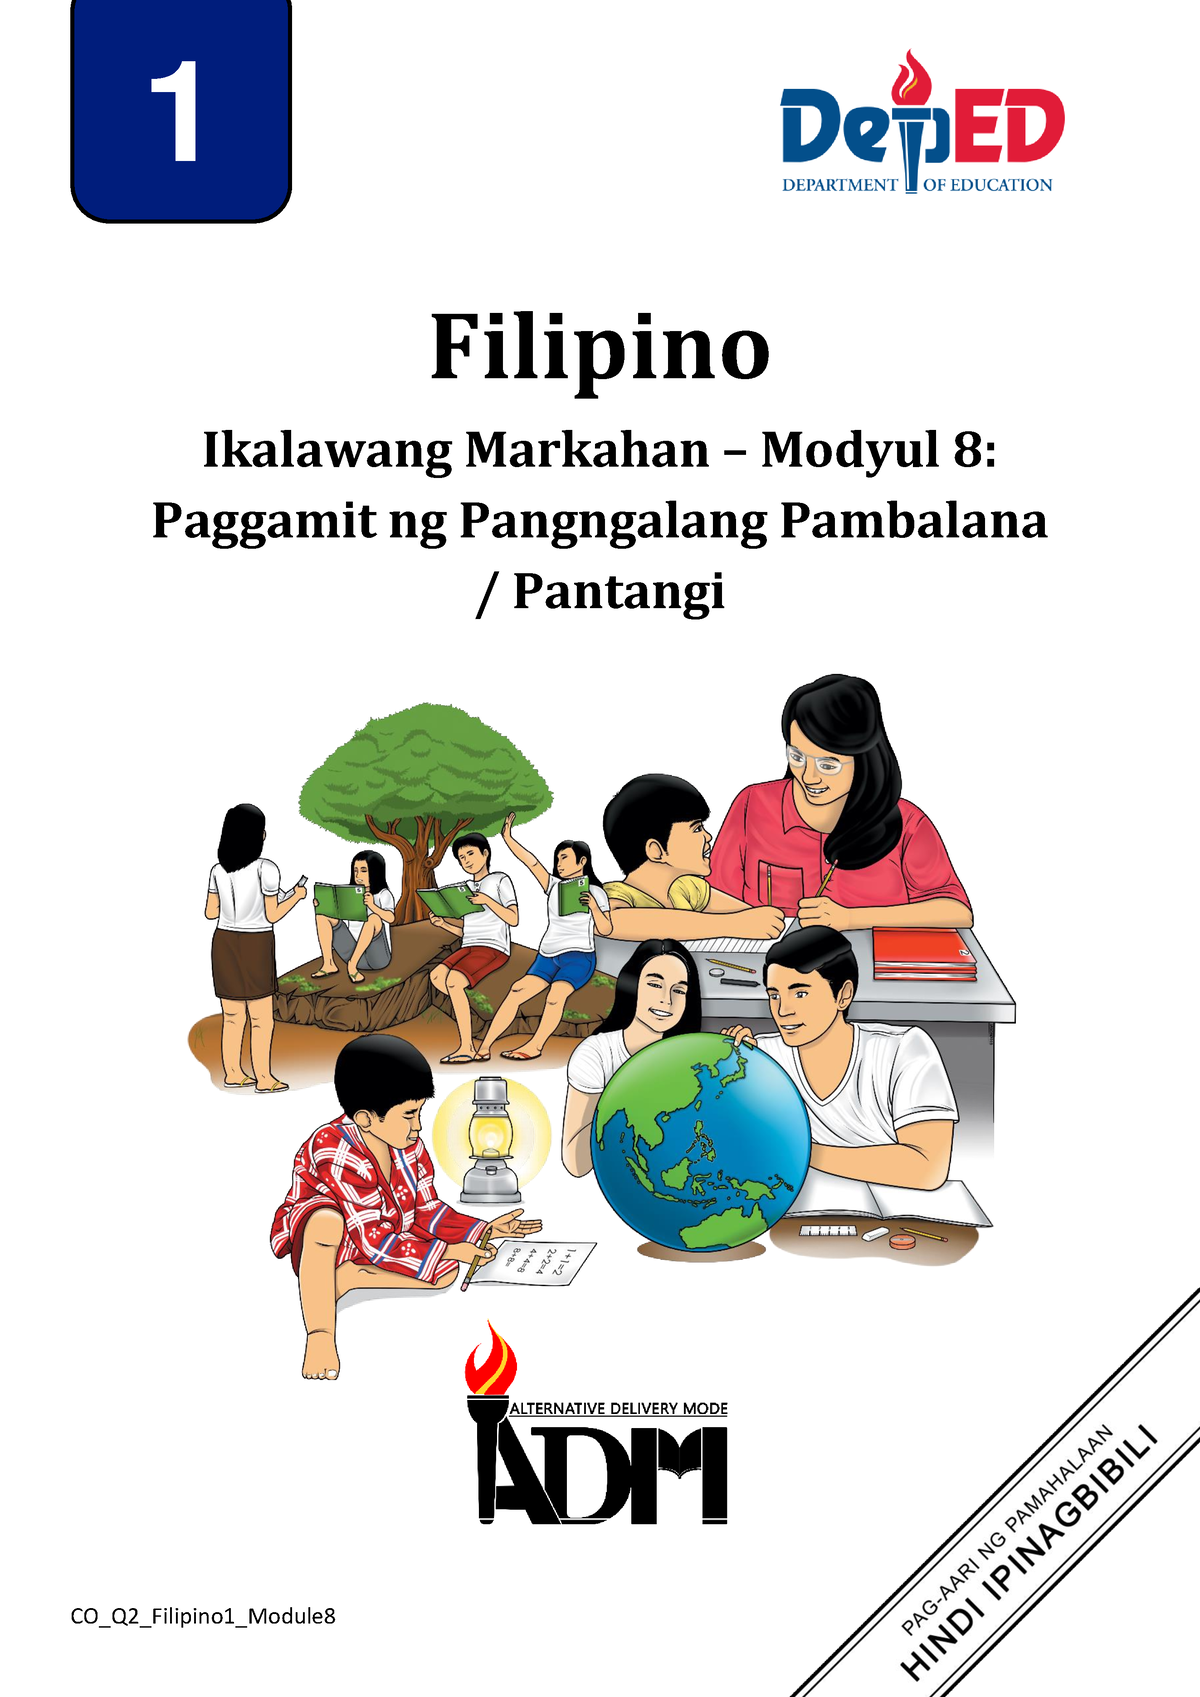 Filipino 1 Q2 Mod8 Paggamit Ng Pangngalang Pambalana Pantangi Filipino Ikalawang Markahan 1616